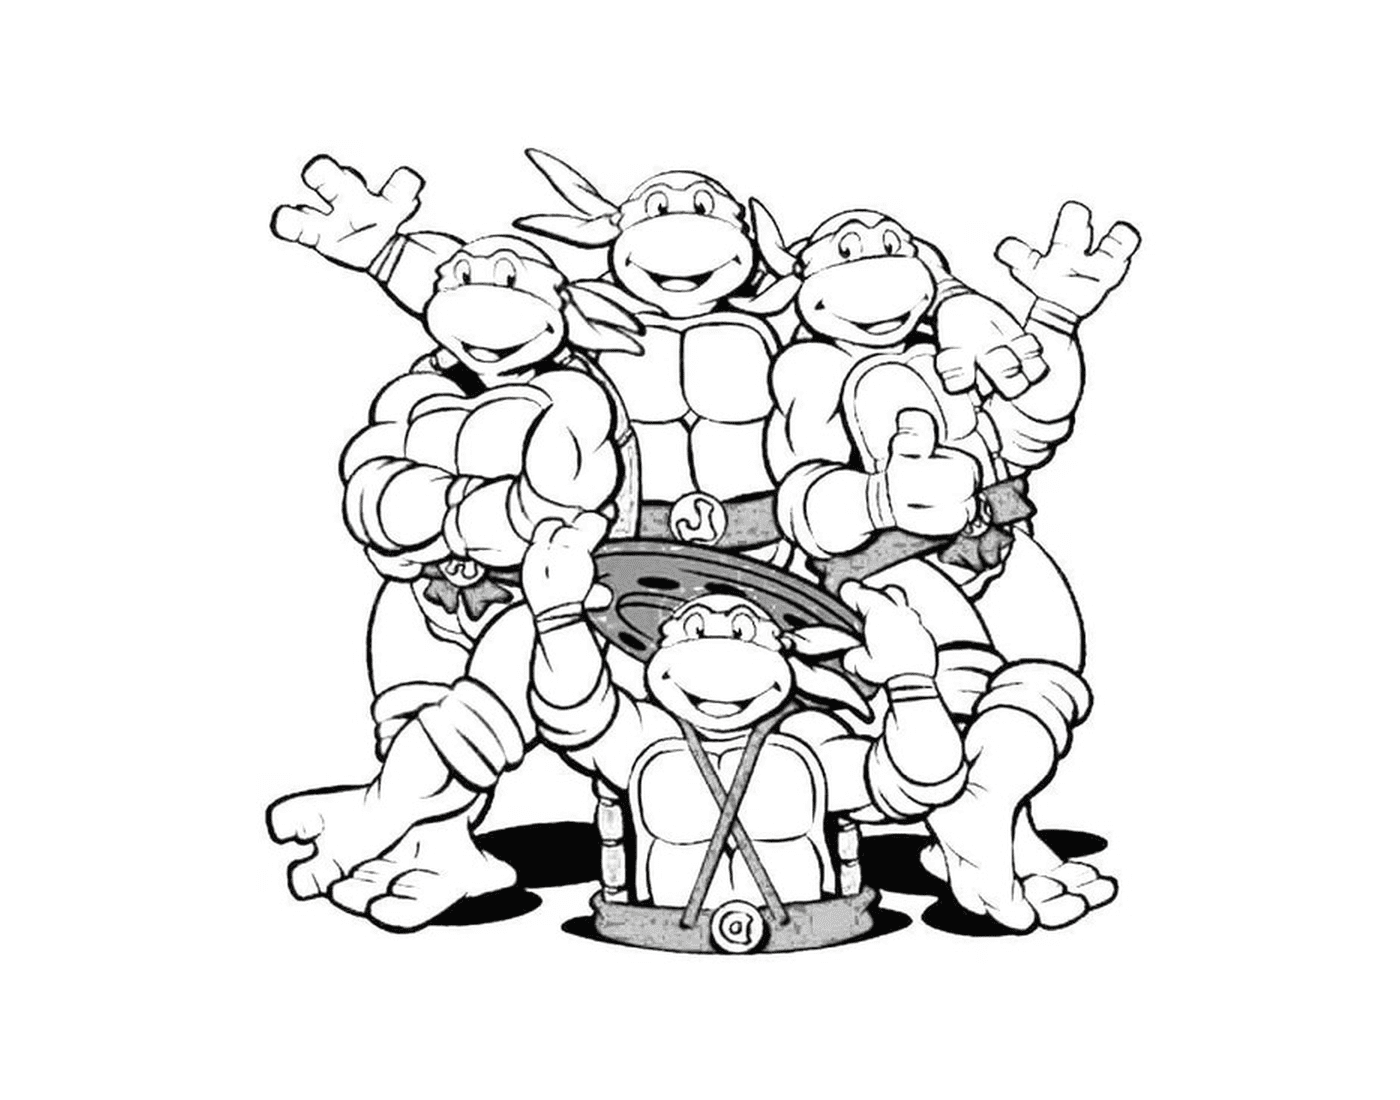  Фантастическая команда черепах ниндзя 